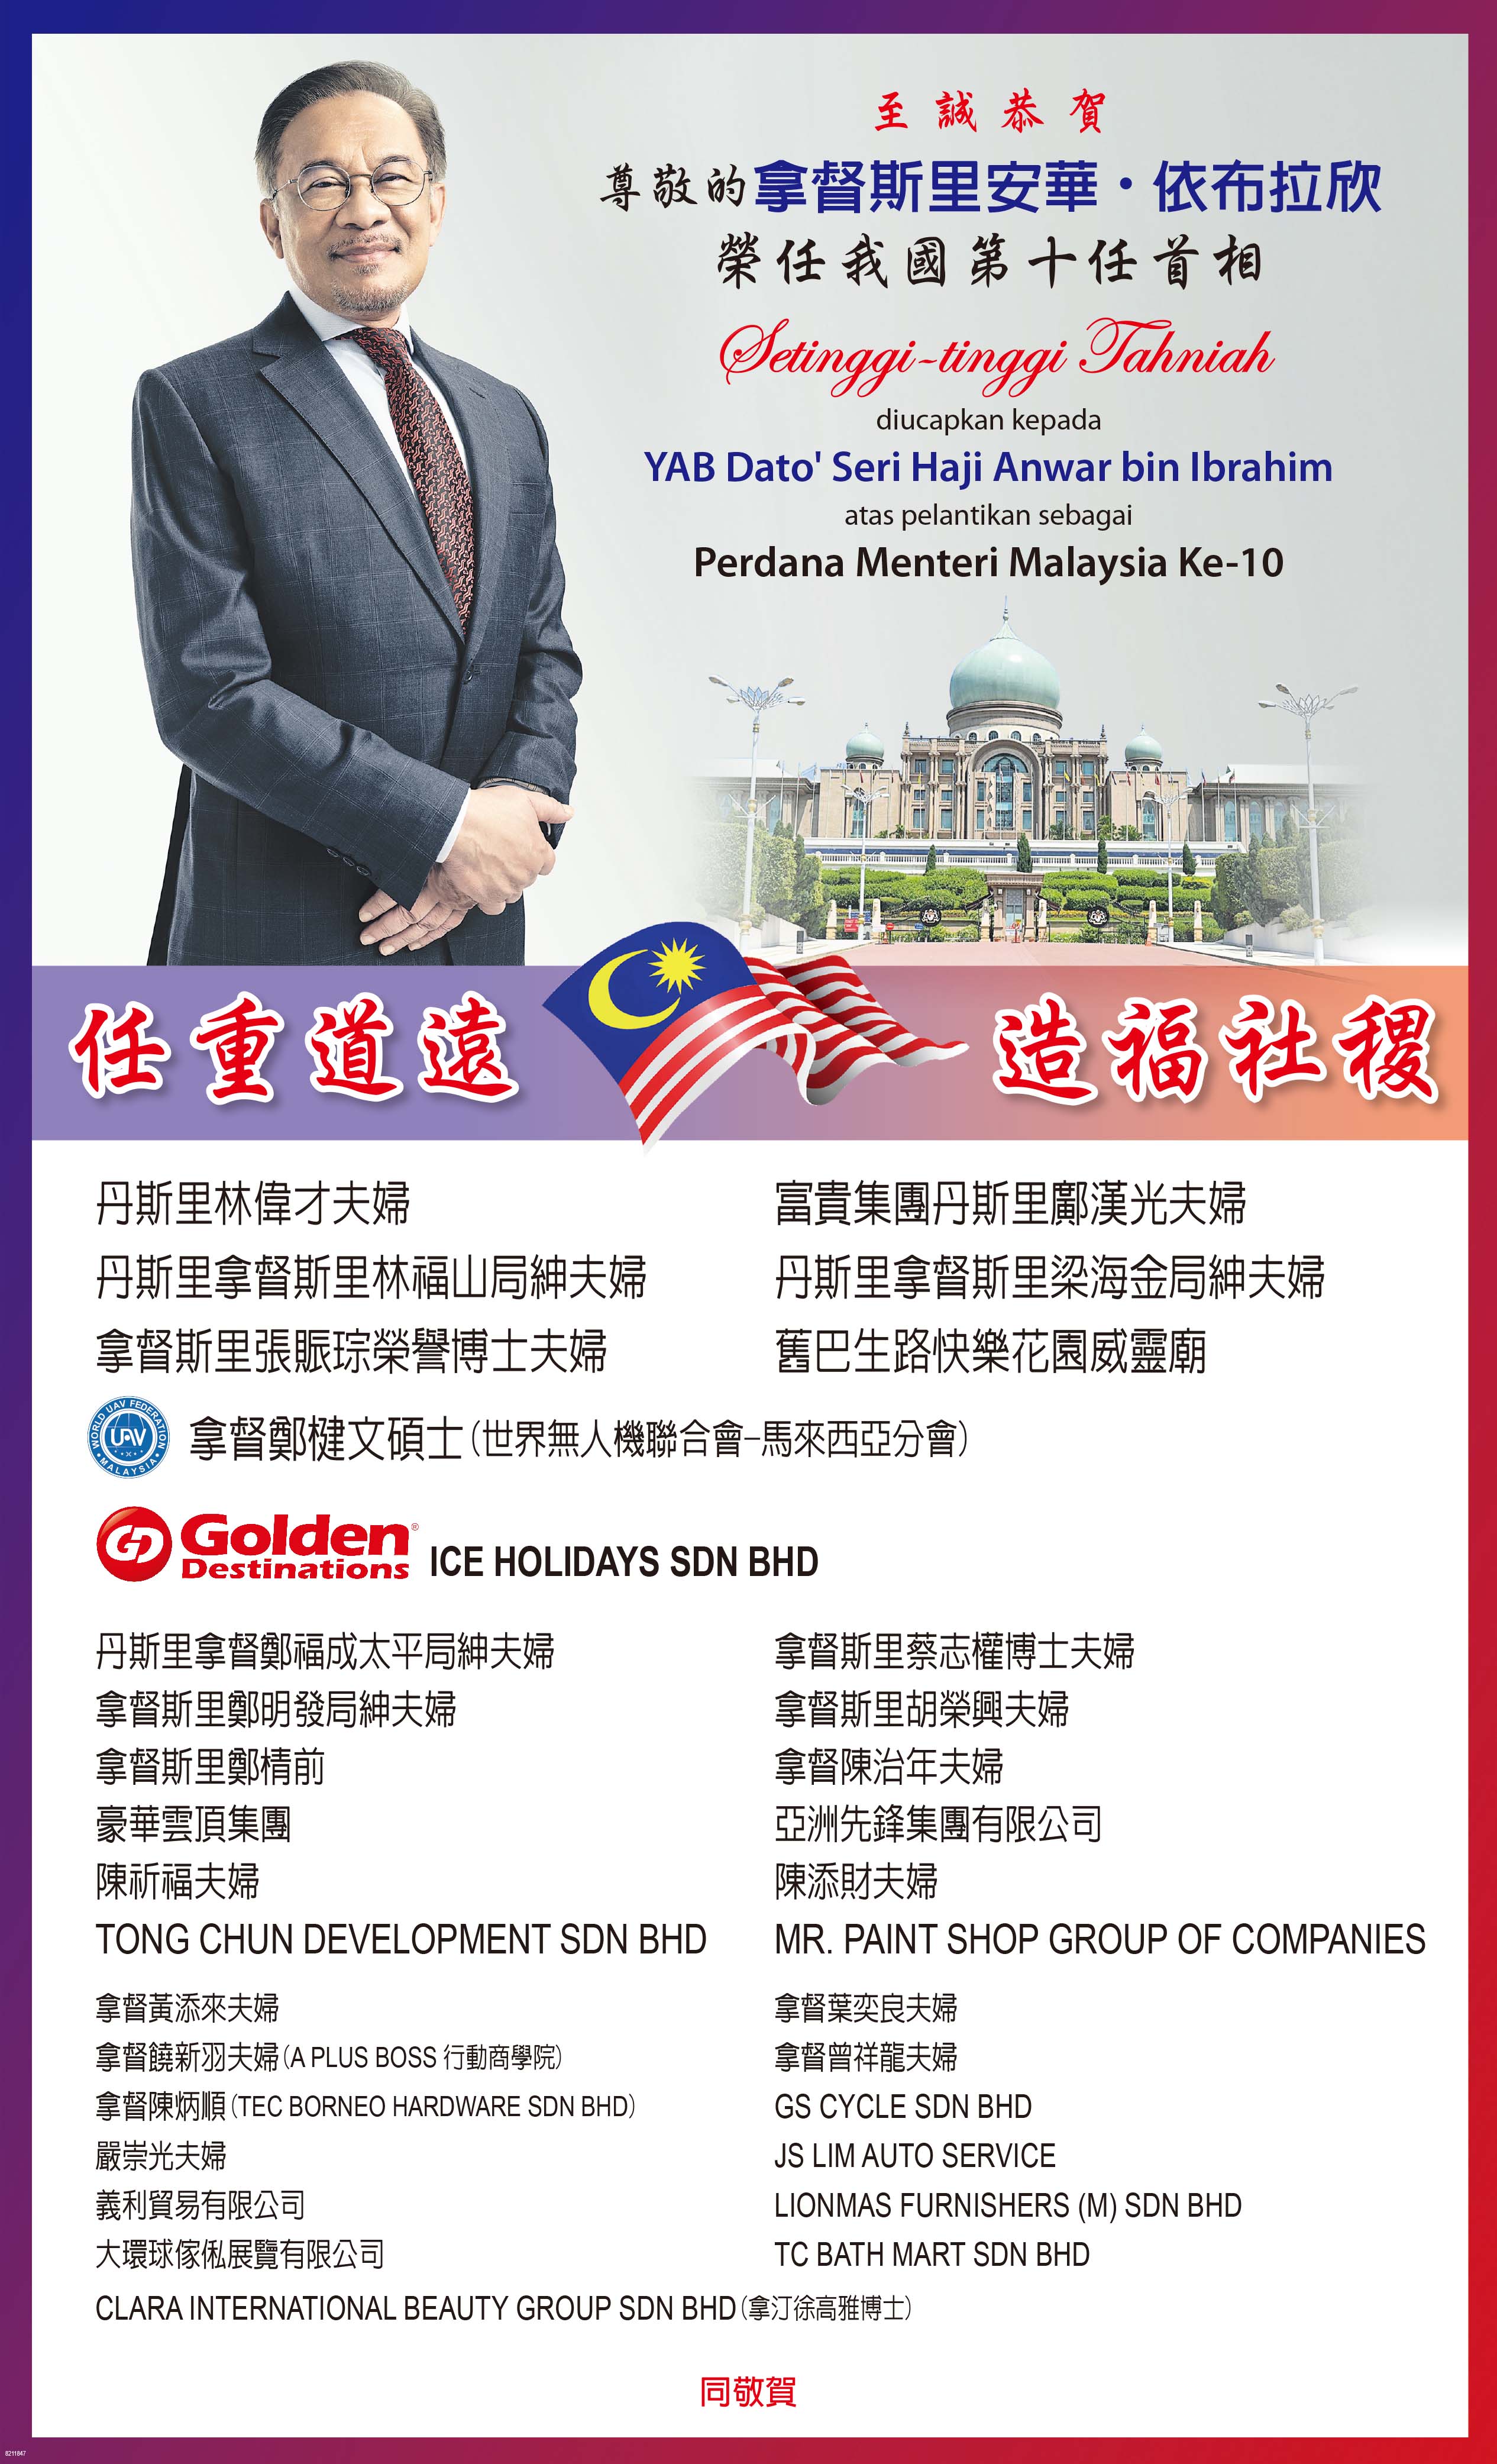 至诚恭贺尊敬的拿督斯里安华依布拉欣荣任马来西亚第10任首相志庆